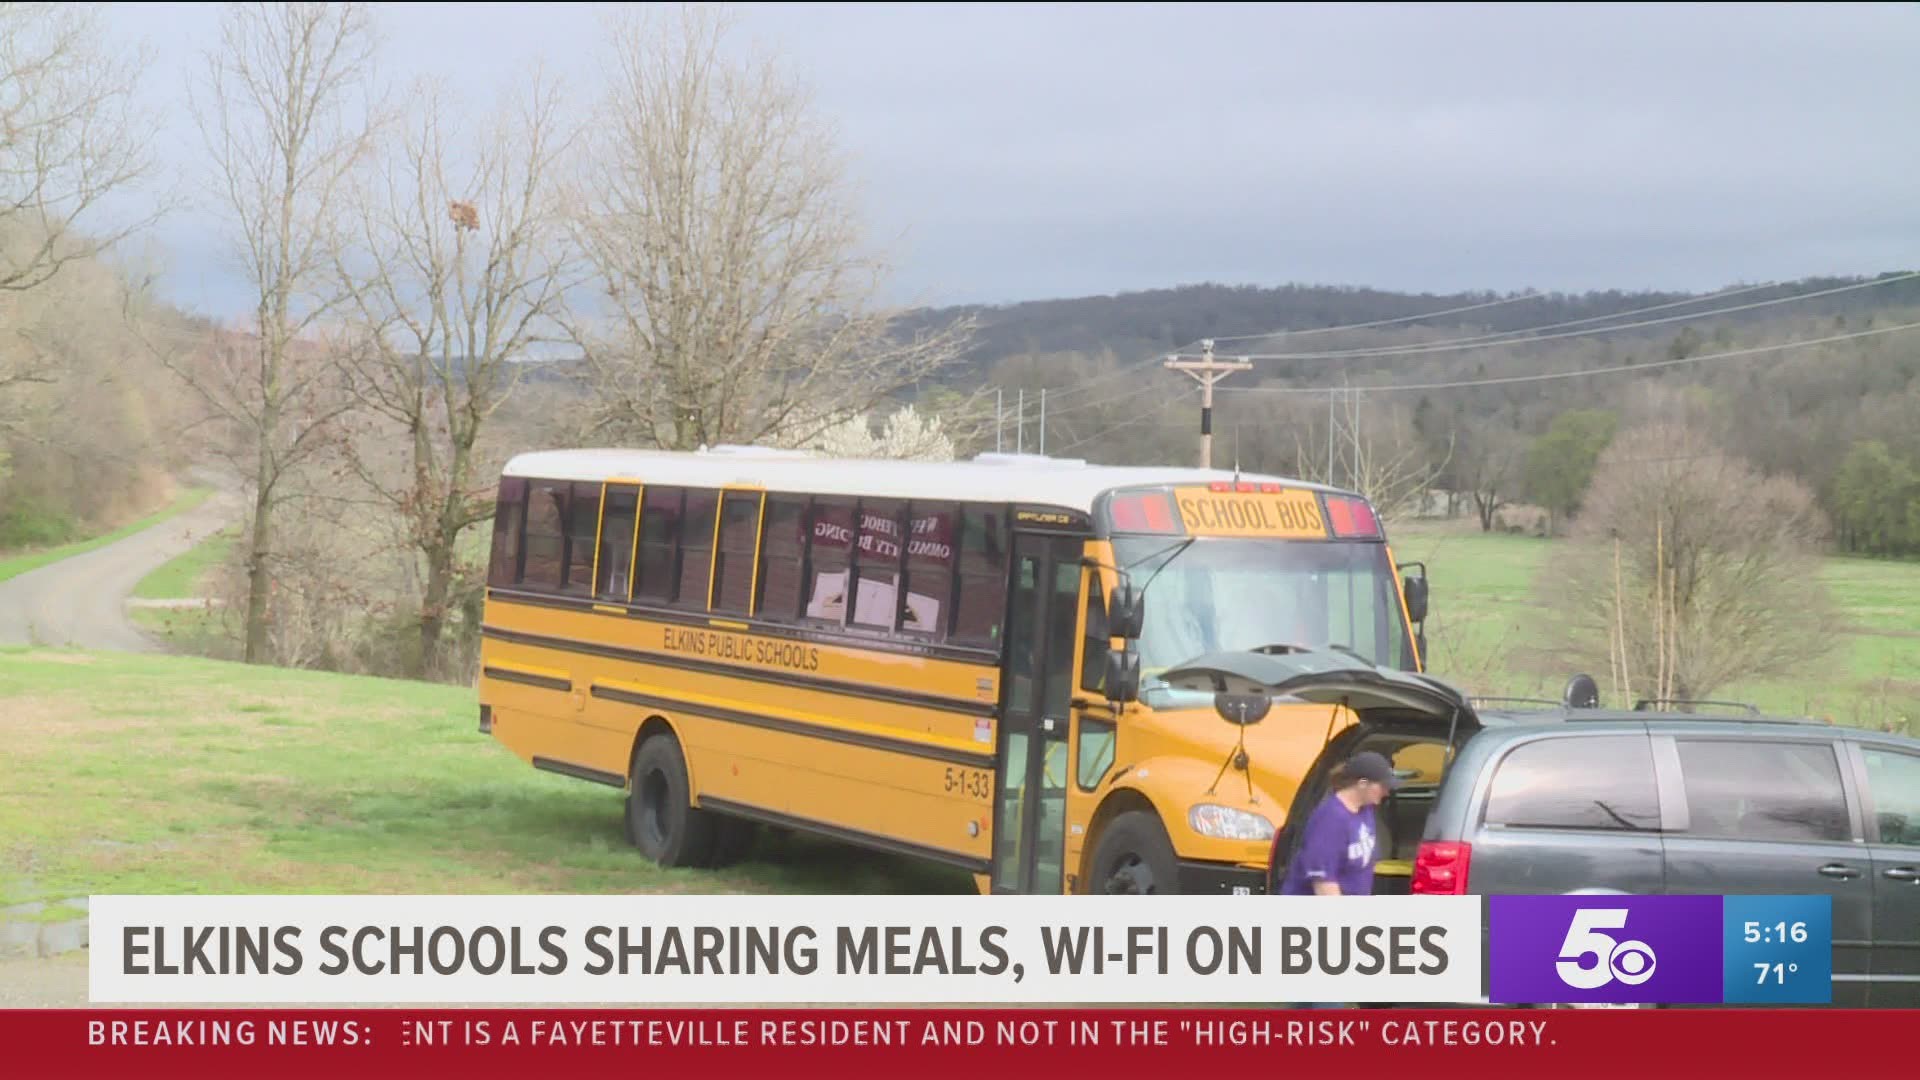 Elkins schools sharing meals, WiFi on buses